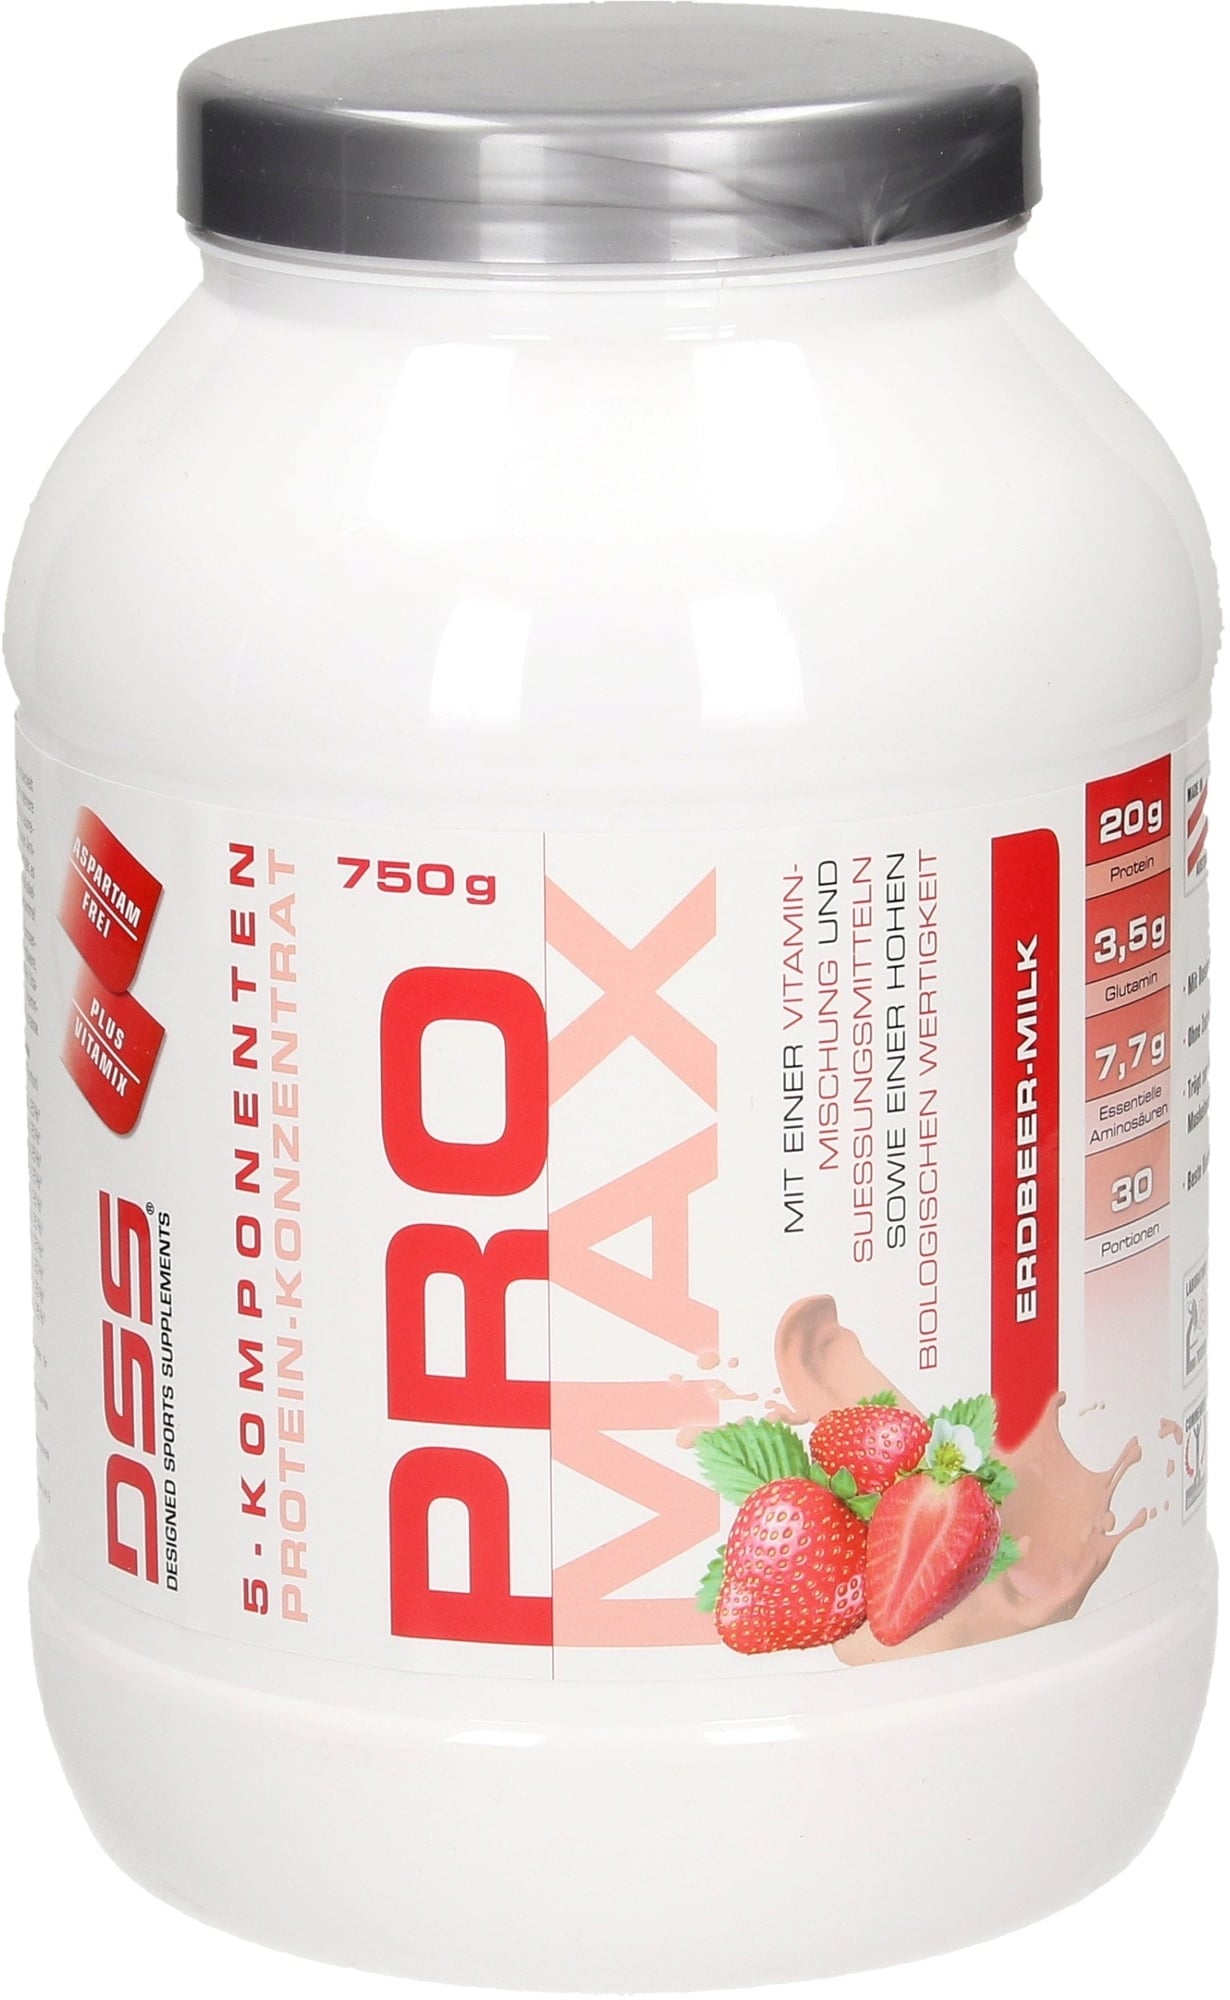 DSS Pro Max - Erdbeer - Milk